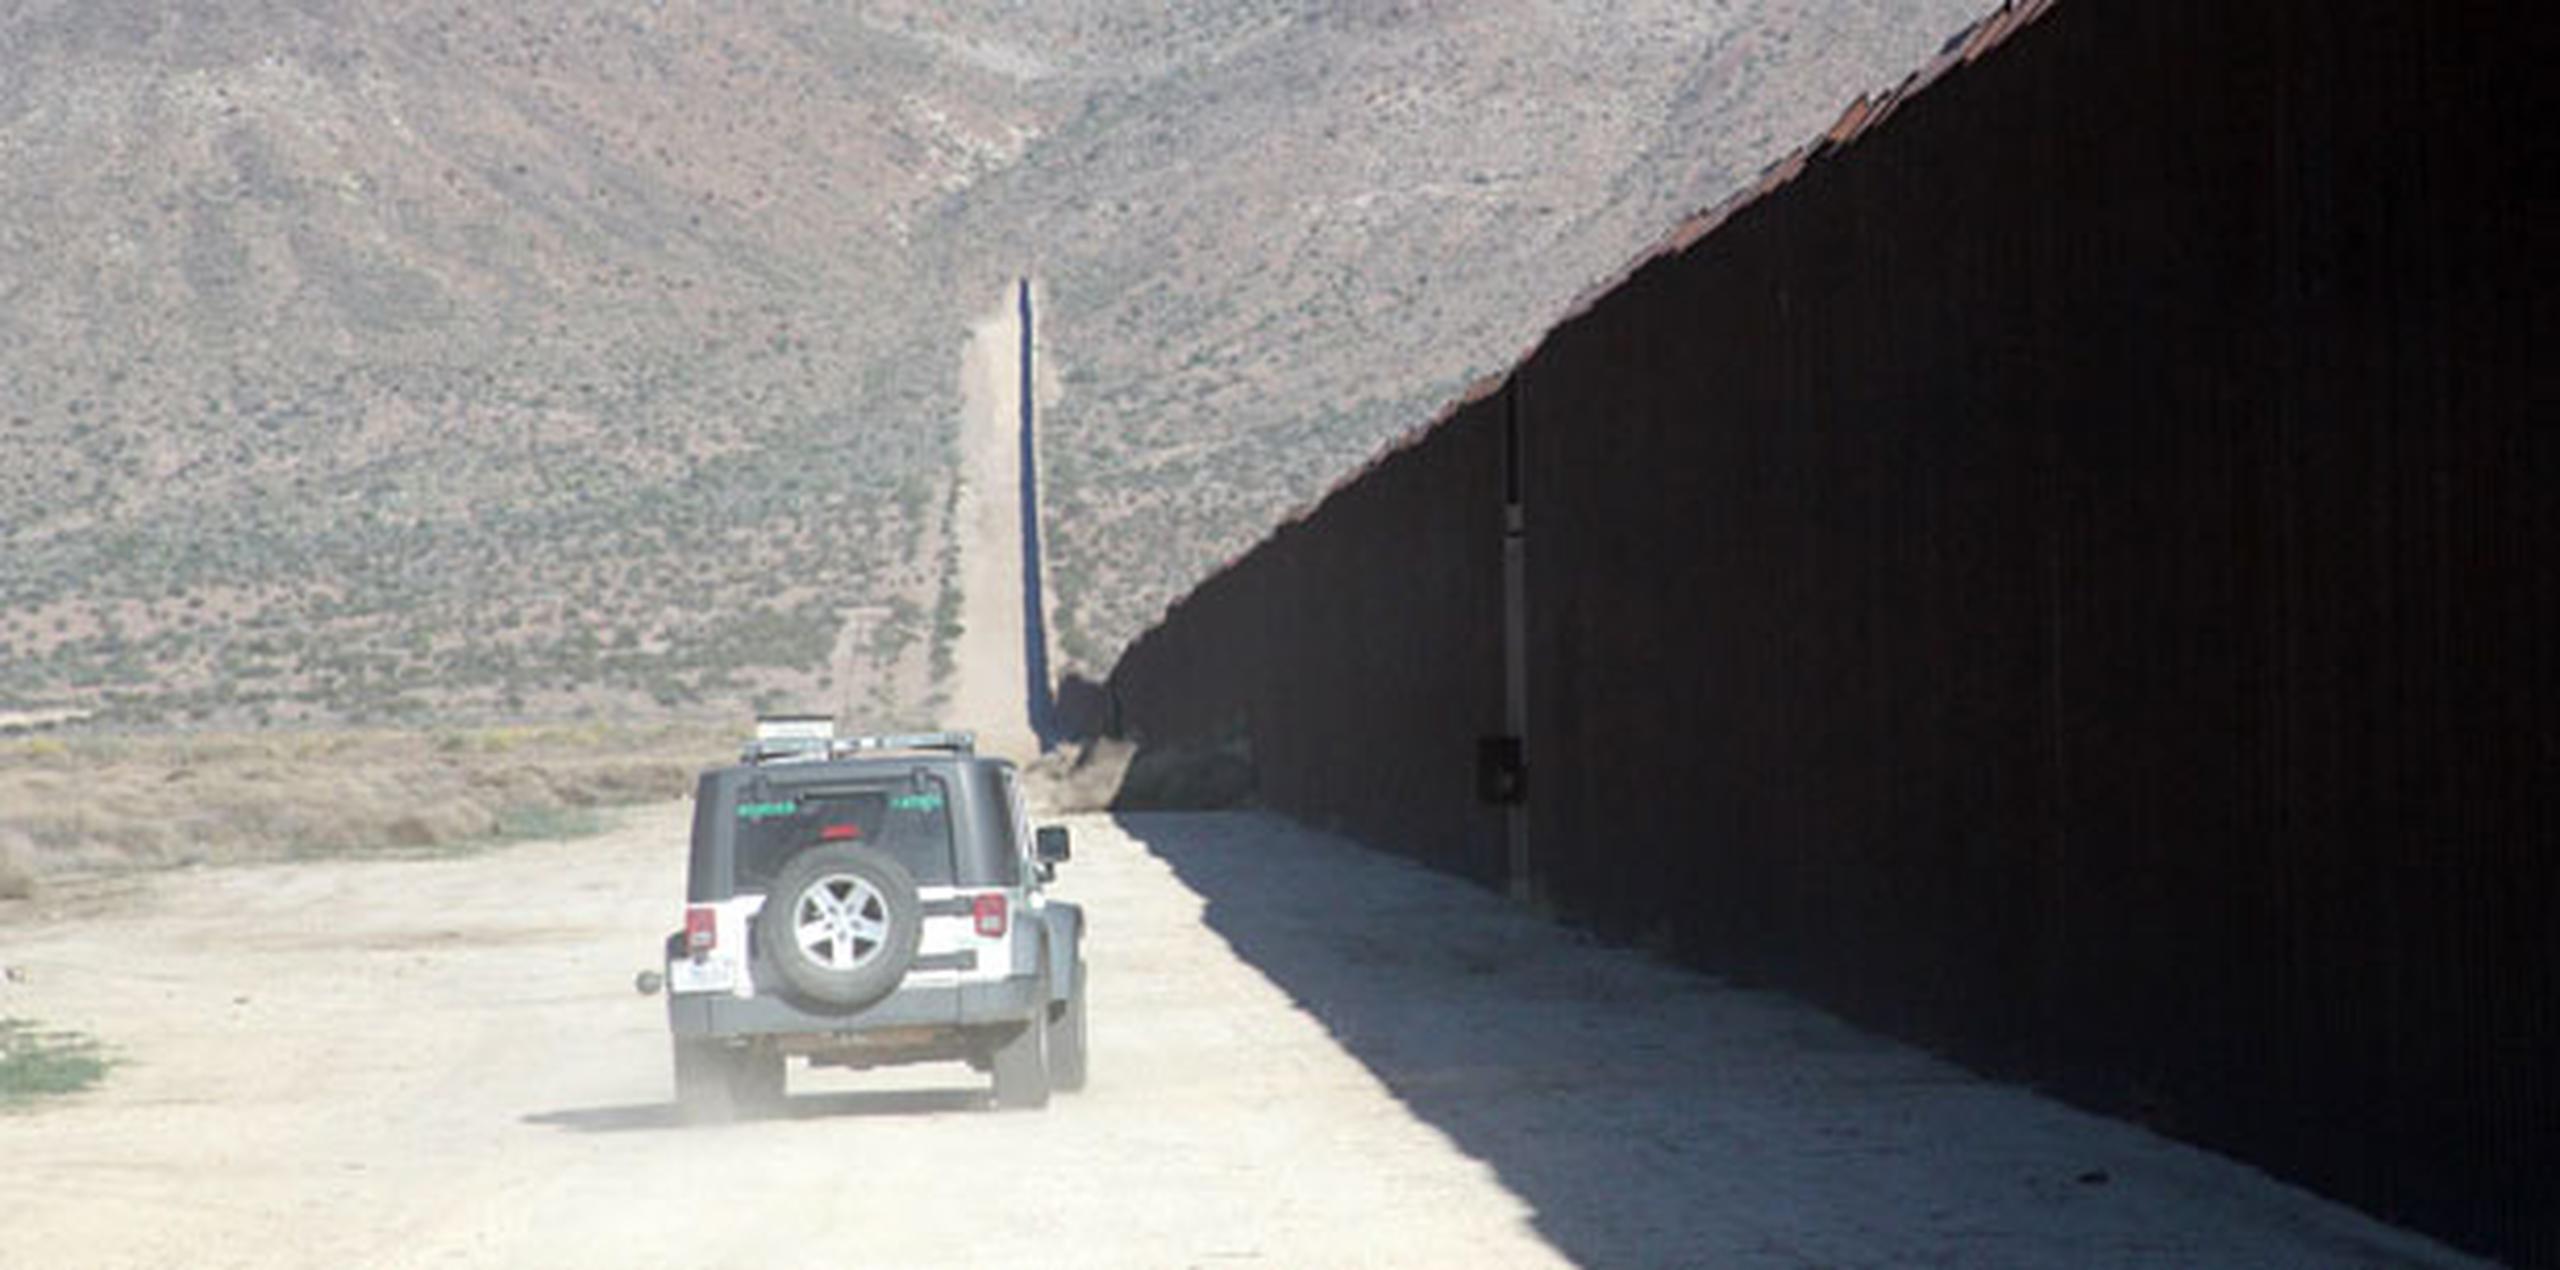 Durante su campaña, el mandatario prometió la construcción de un muro impenetrable a lo largo de la frontera con México, que sería fabricado de acero y concreto.  (Archivo)